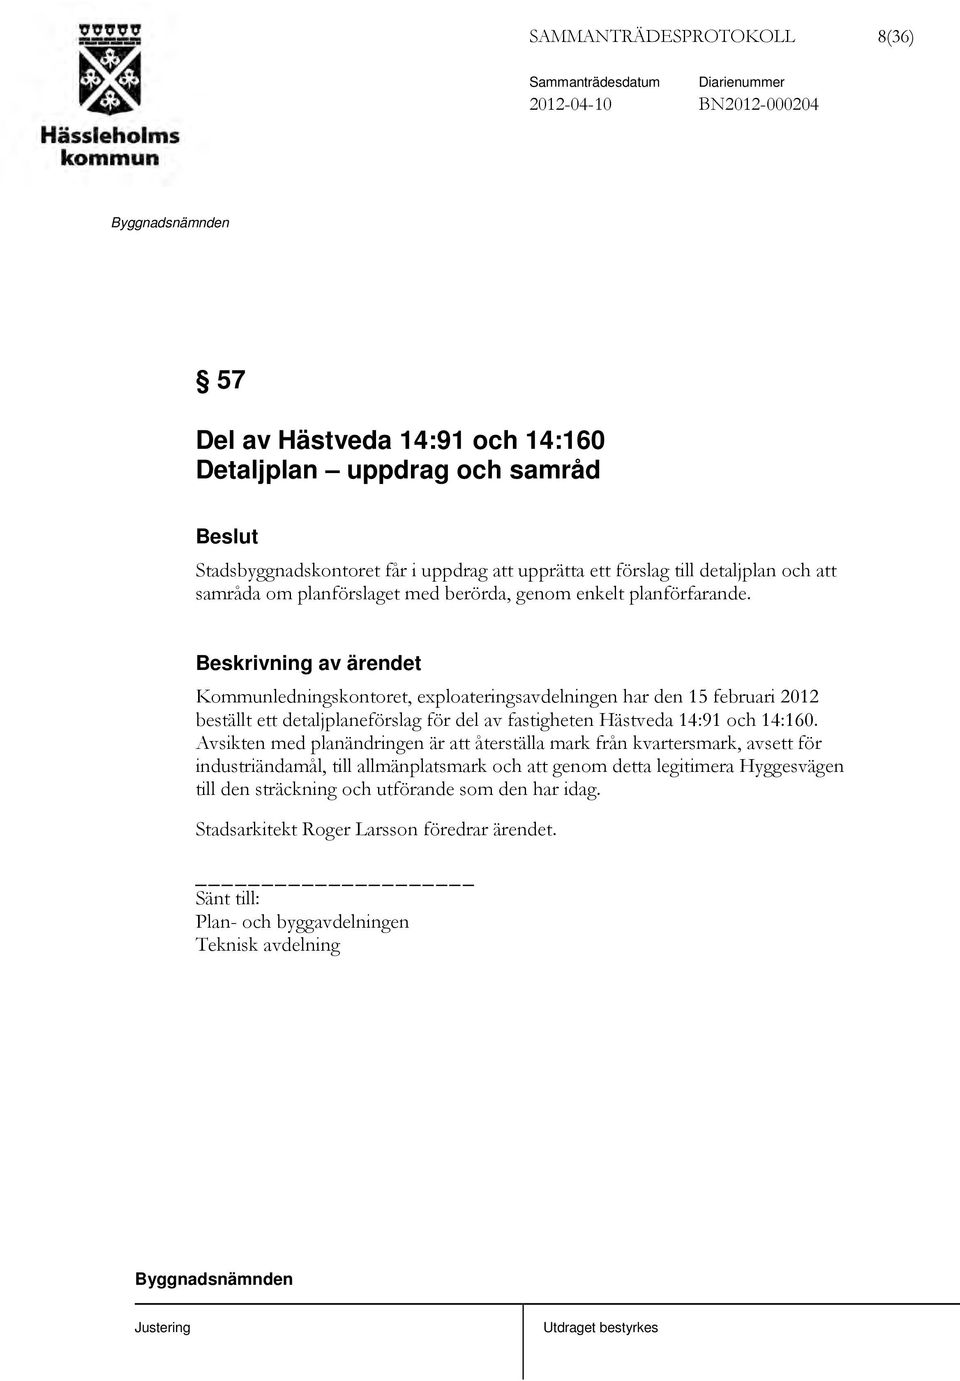 Kommunledningskontoret, exploateringsavdelningen har den 15 februari 2012 beställt ett detaljplaneförslag för del av fastigheten Hästveda 14:91 och 14:160.